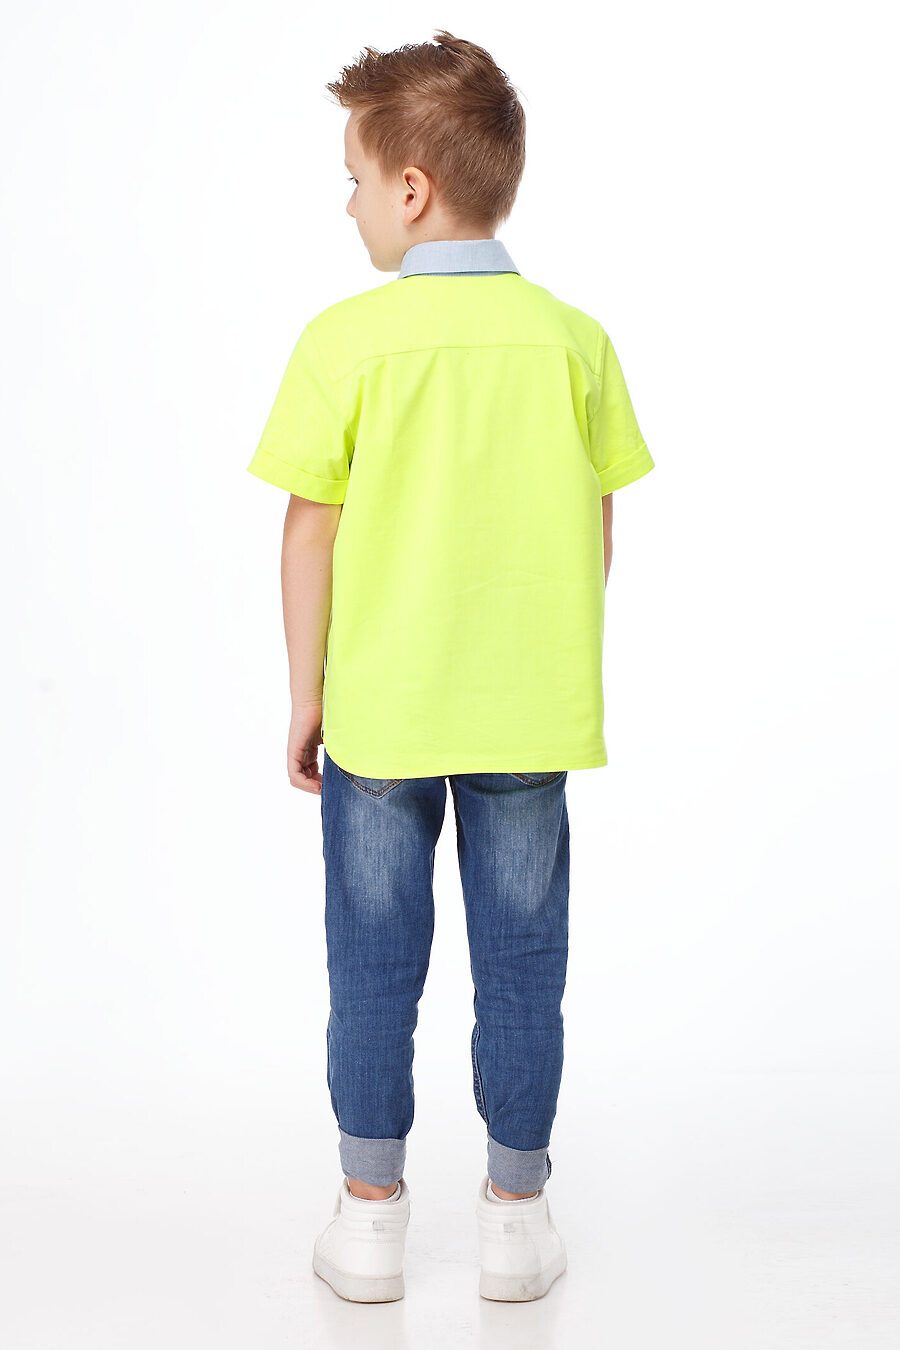 Рубашка для мальчиков PANDA 664694 купить оптом от производителя. Совместная покупка детской одежды в OptMoyo